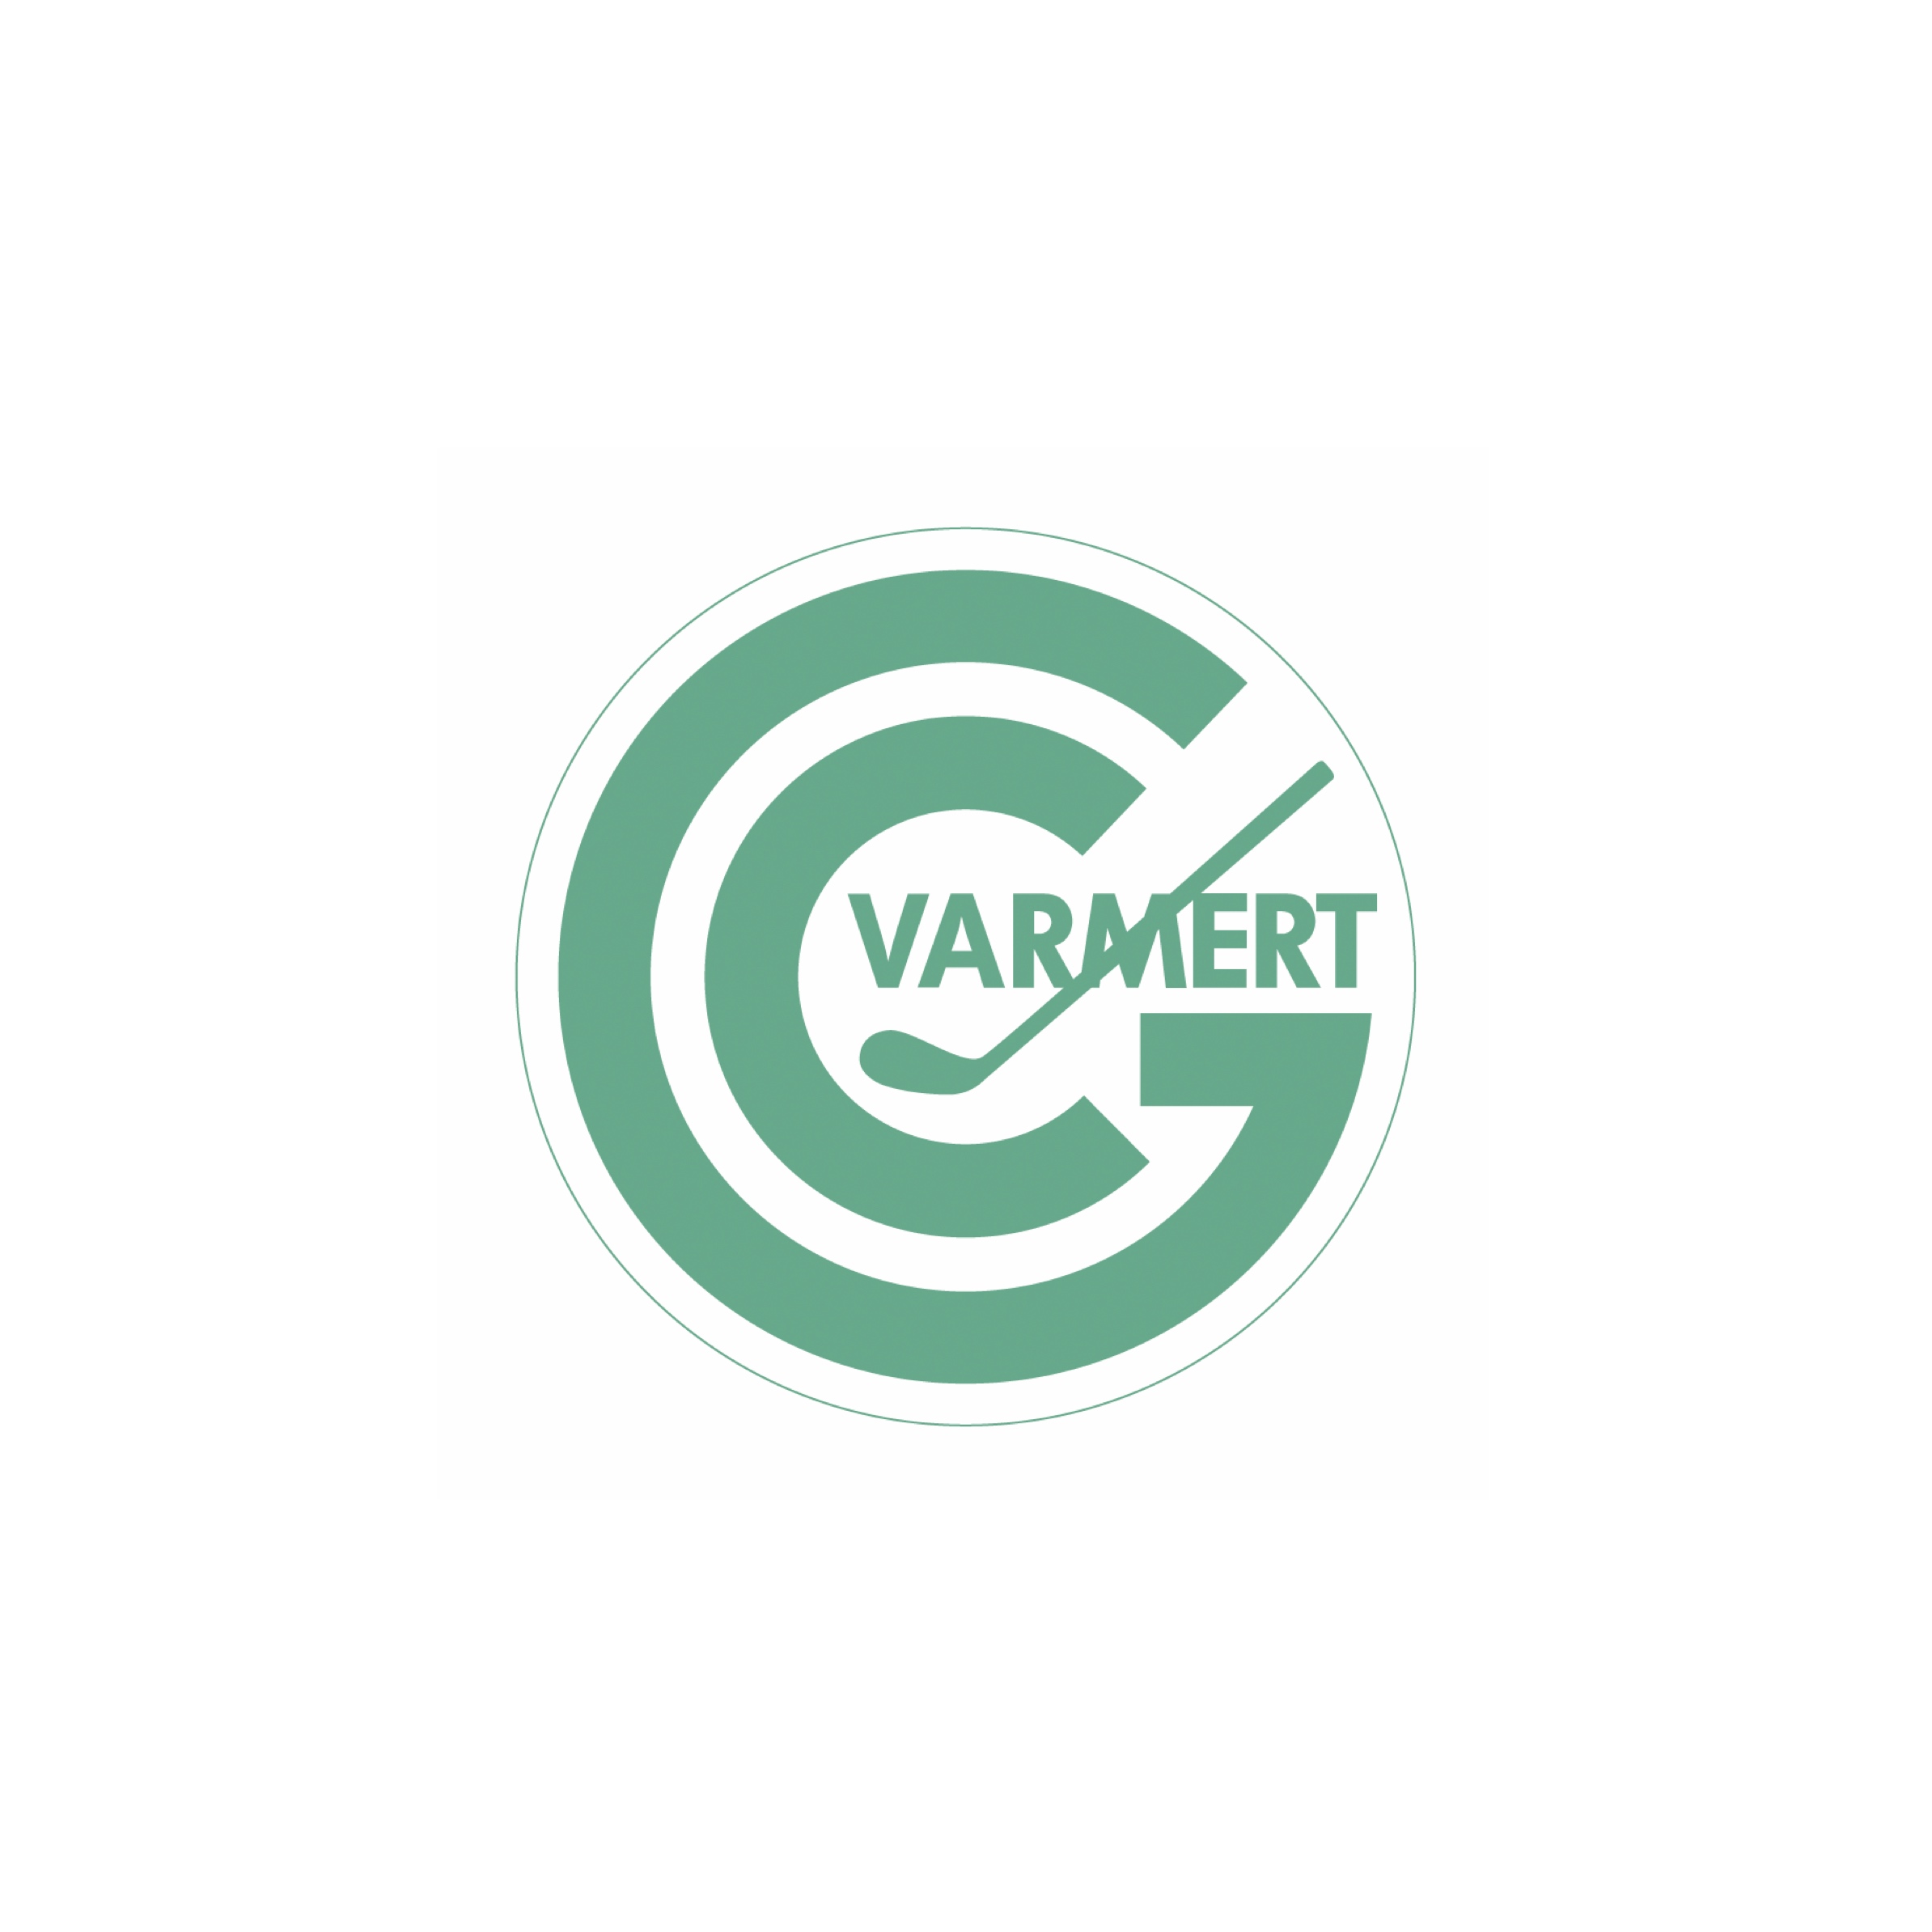 65. Varmert (Golf-Club Varmert e.V.)